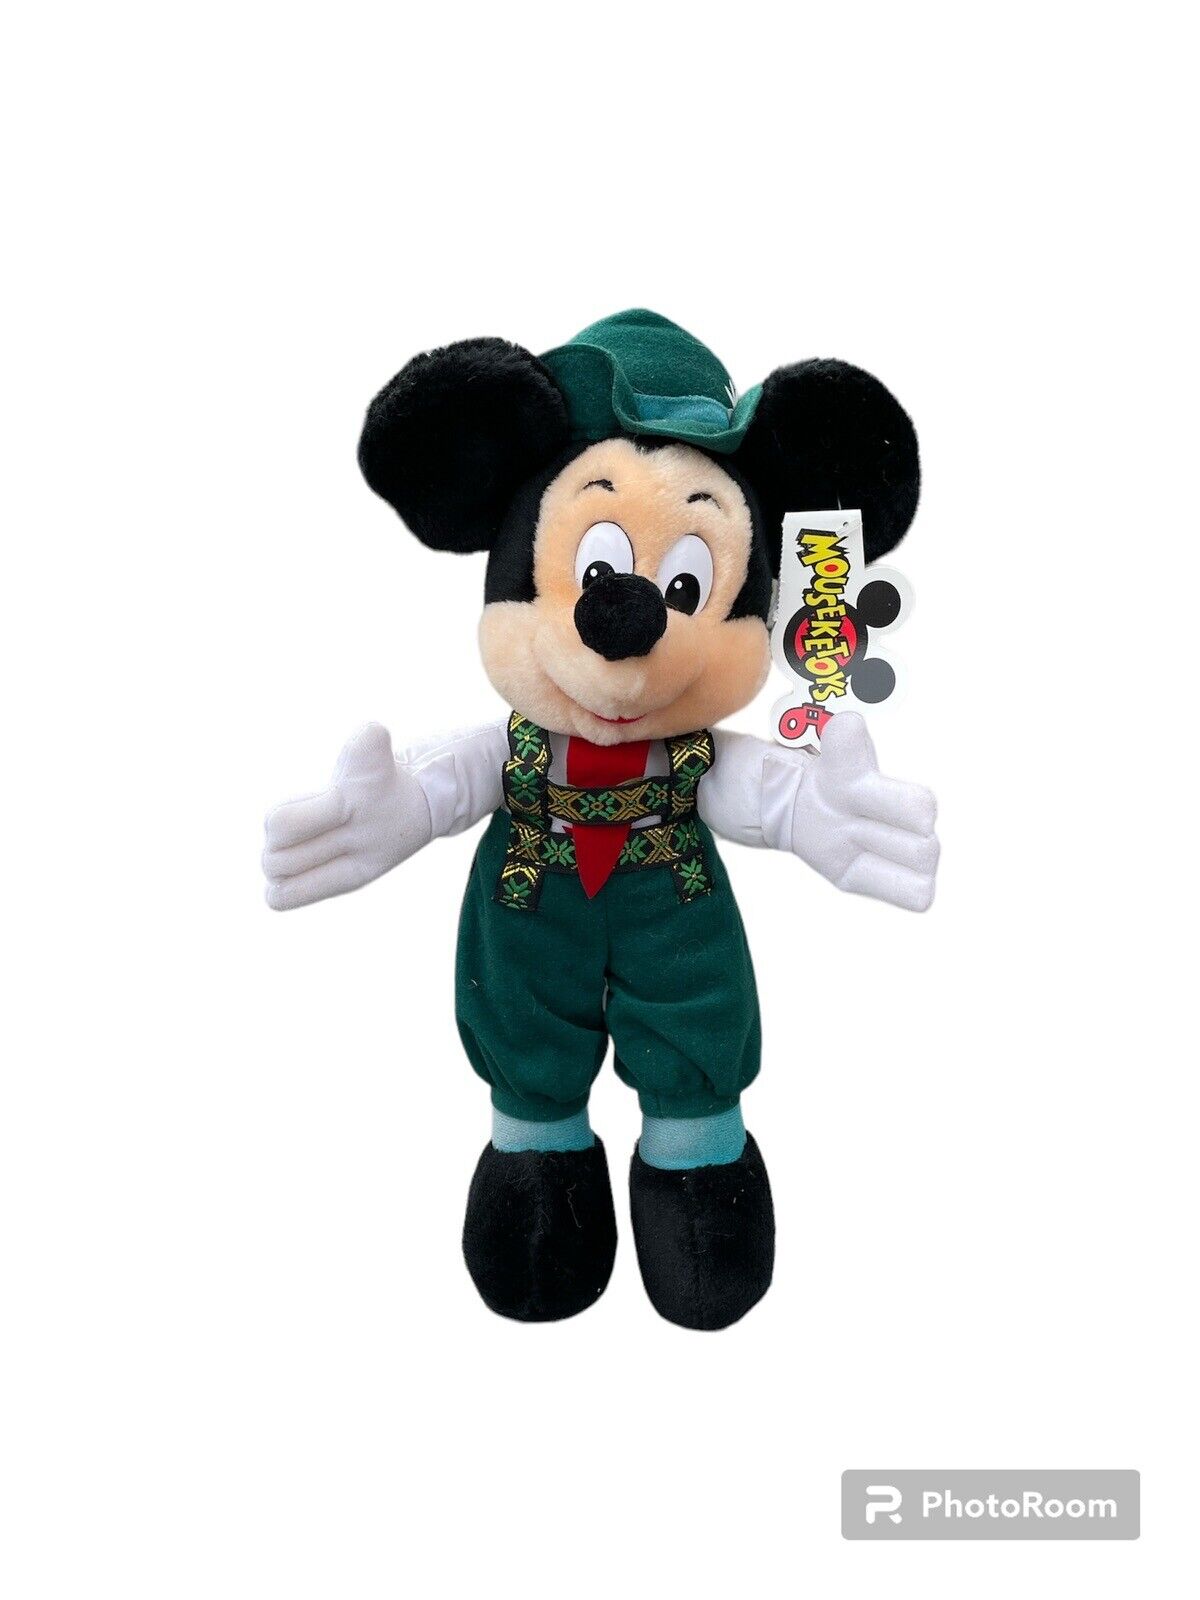 Vintage Mouseketoys Disney Mickey Mouse German Lederhosen Plush With Stand